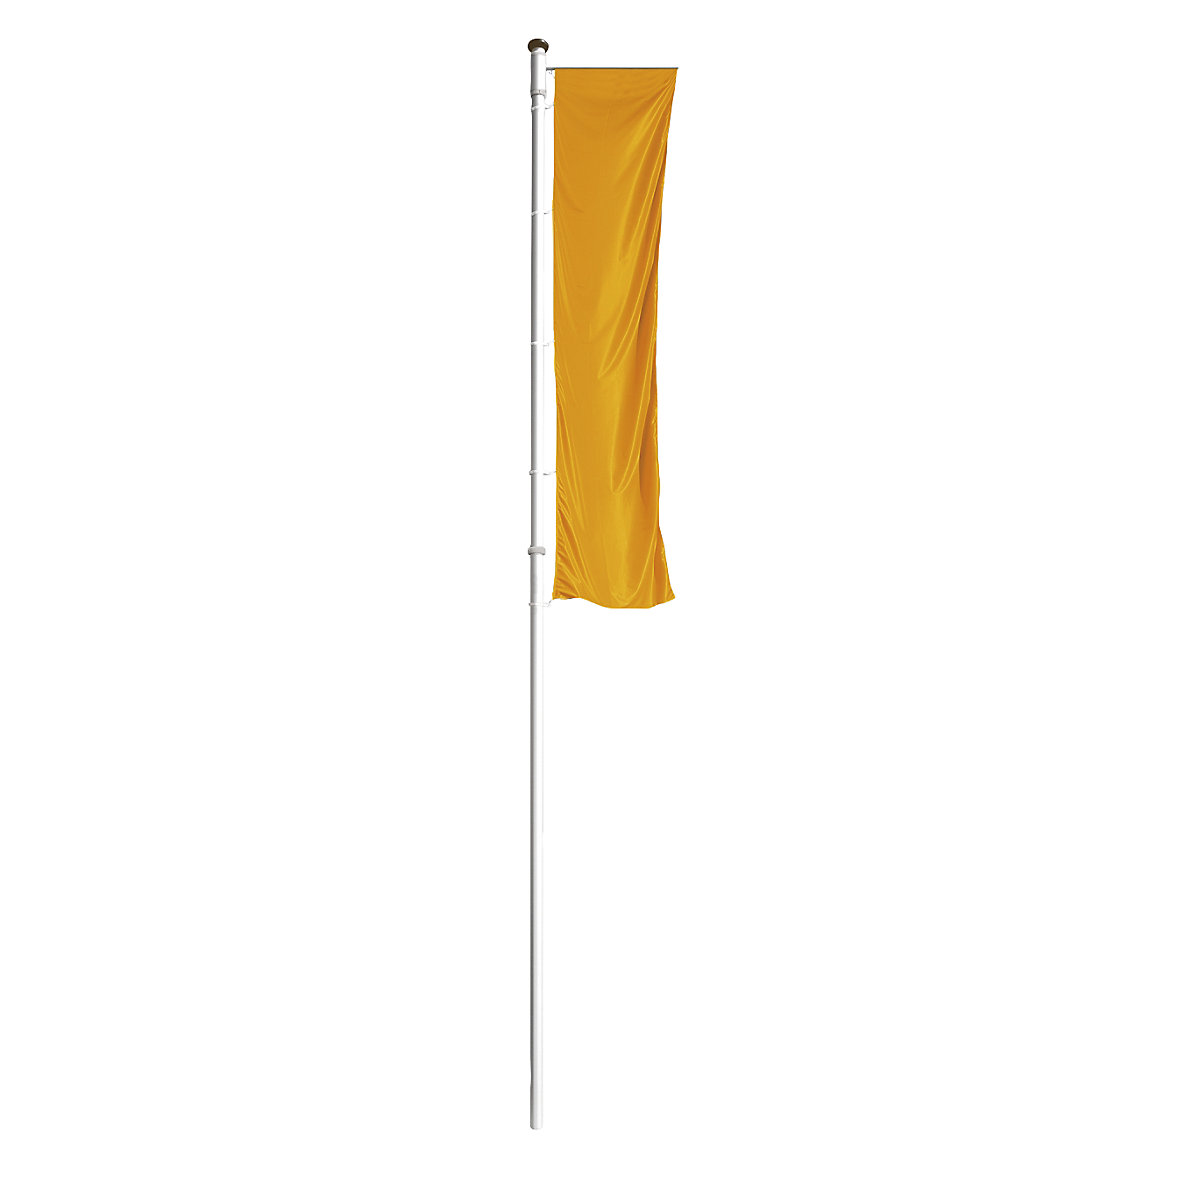 Mastro de bandeira em alumínio PRESTIGE – Mannus